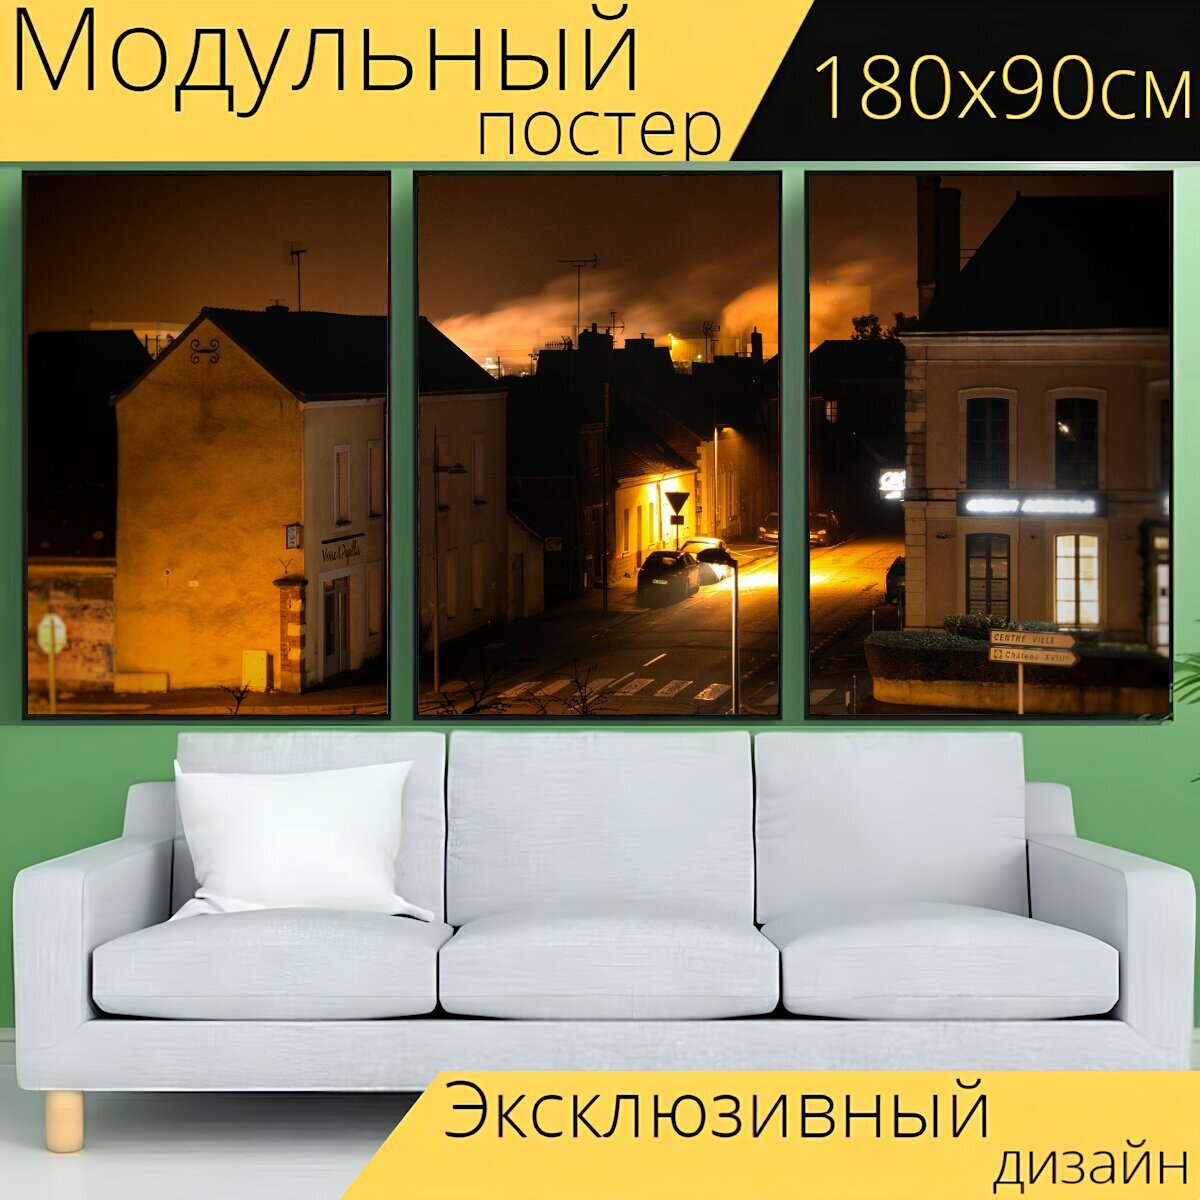 Модульный постер "Маленький город, дом, улица света" 180 x 90 см. для интерьера